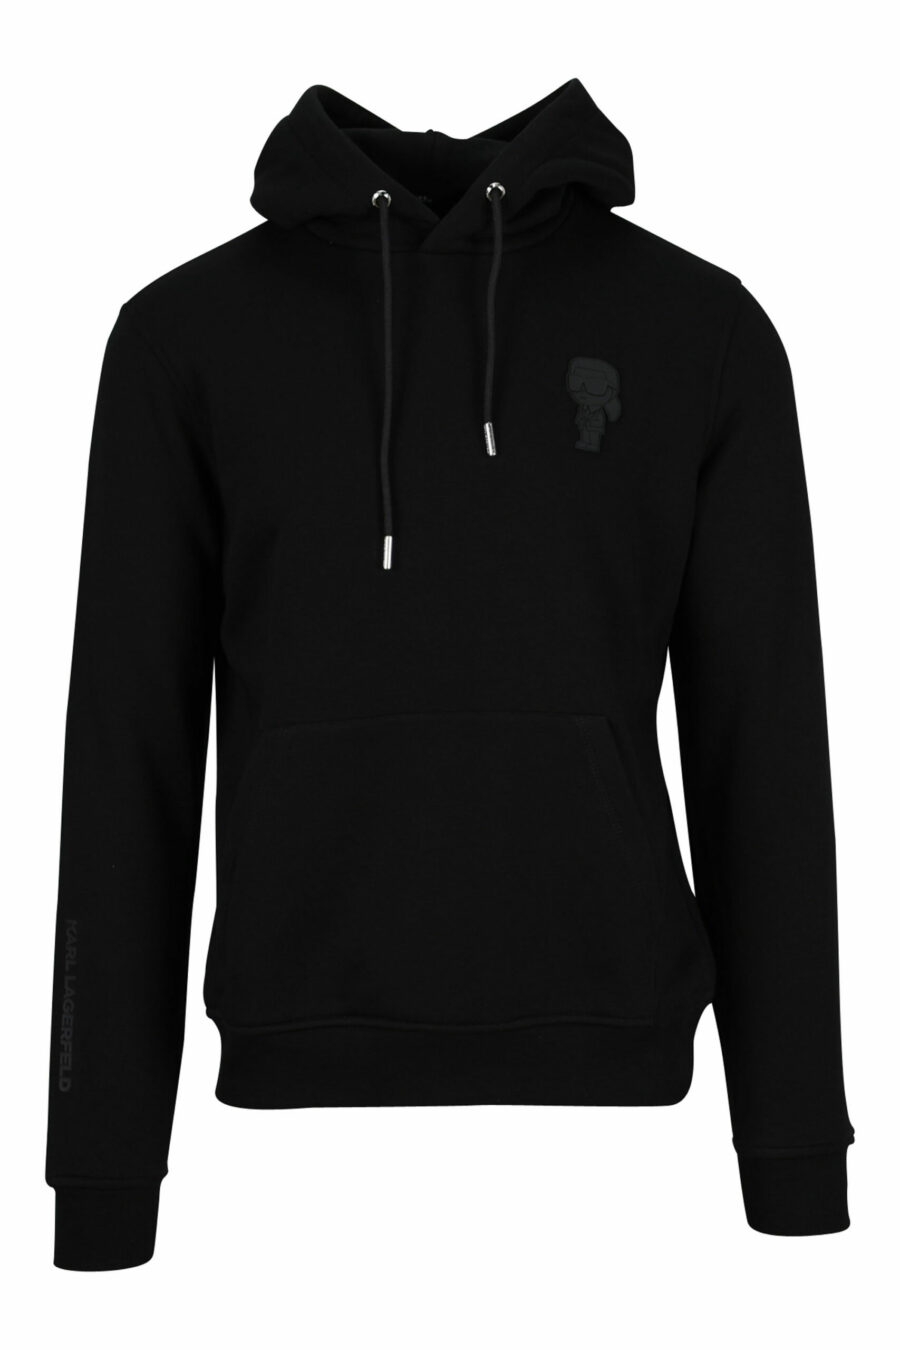 Schwarzes Kapuzensweatshirt mit einfarbigem Gummi-Mini-Logo - 4062226393577 4 skaliert